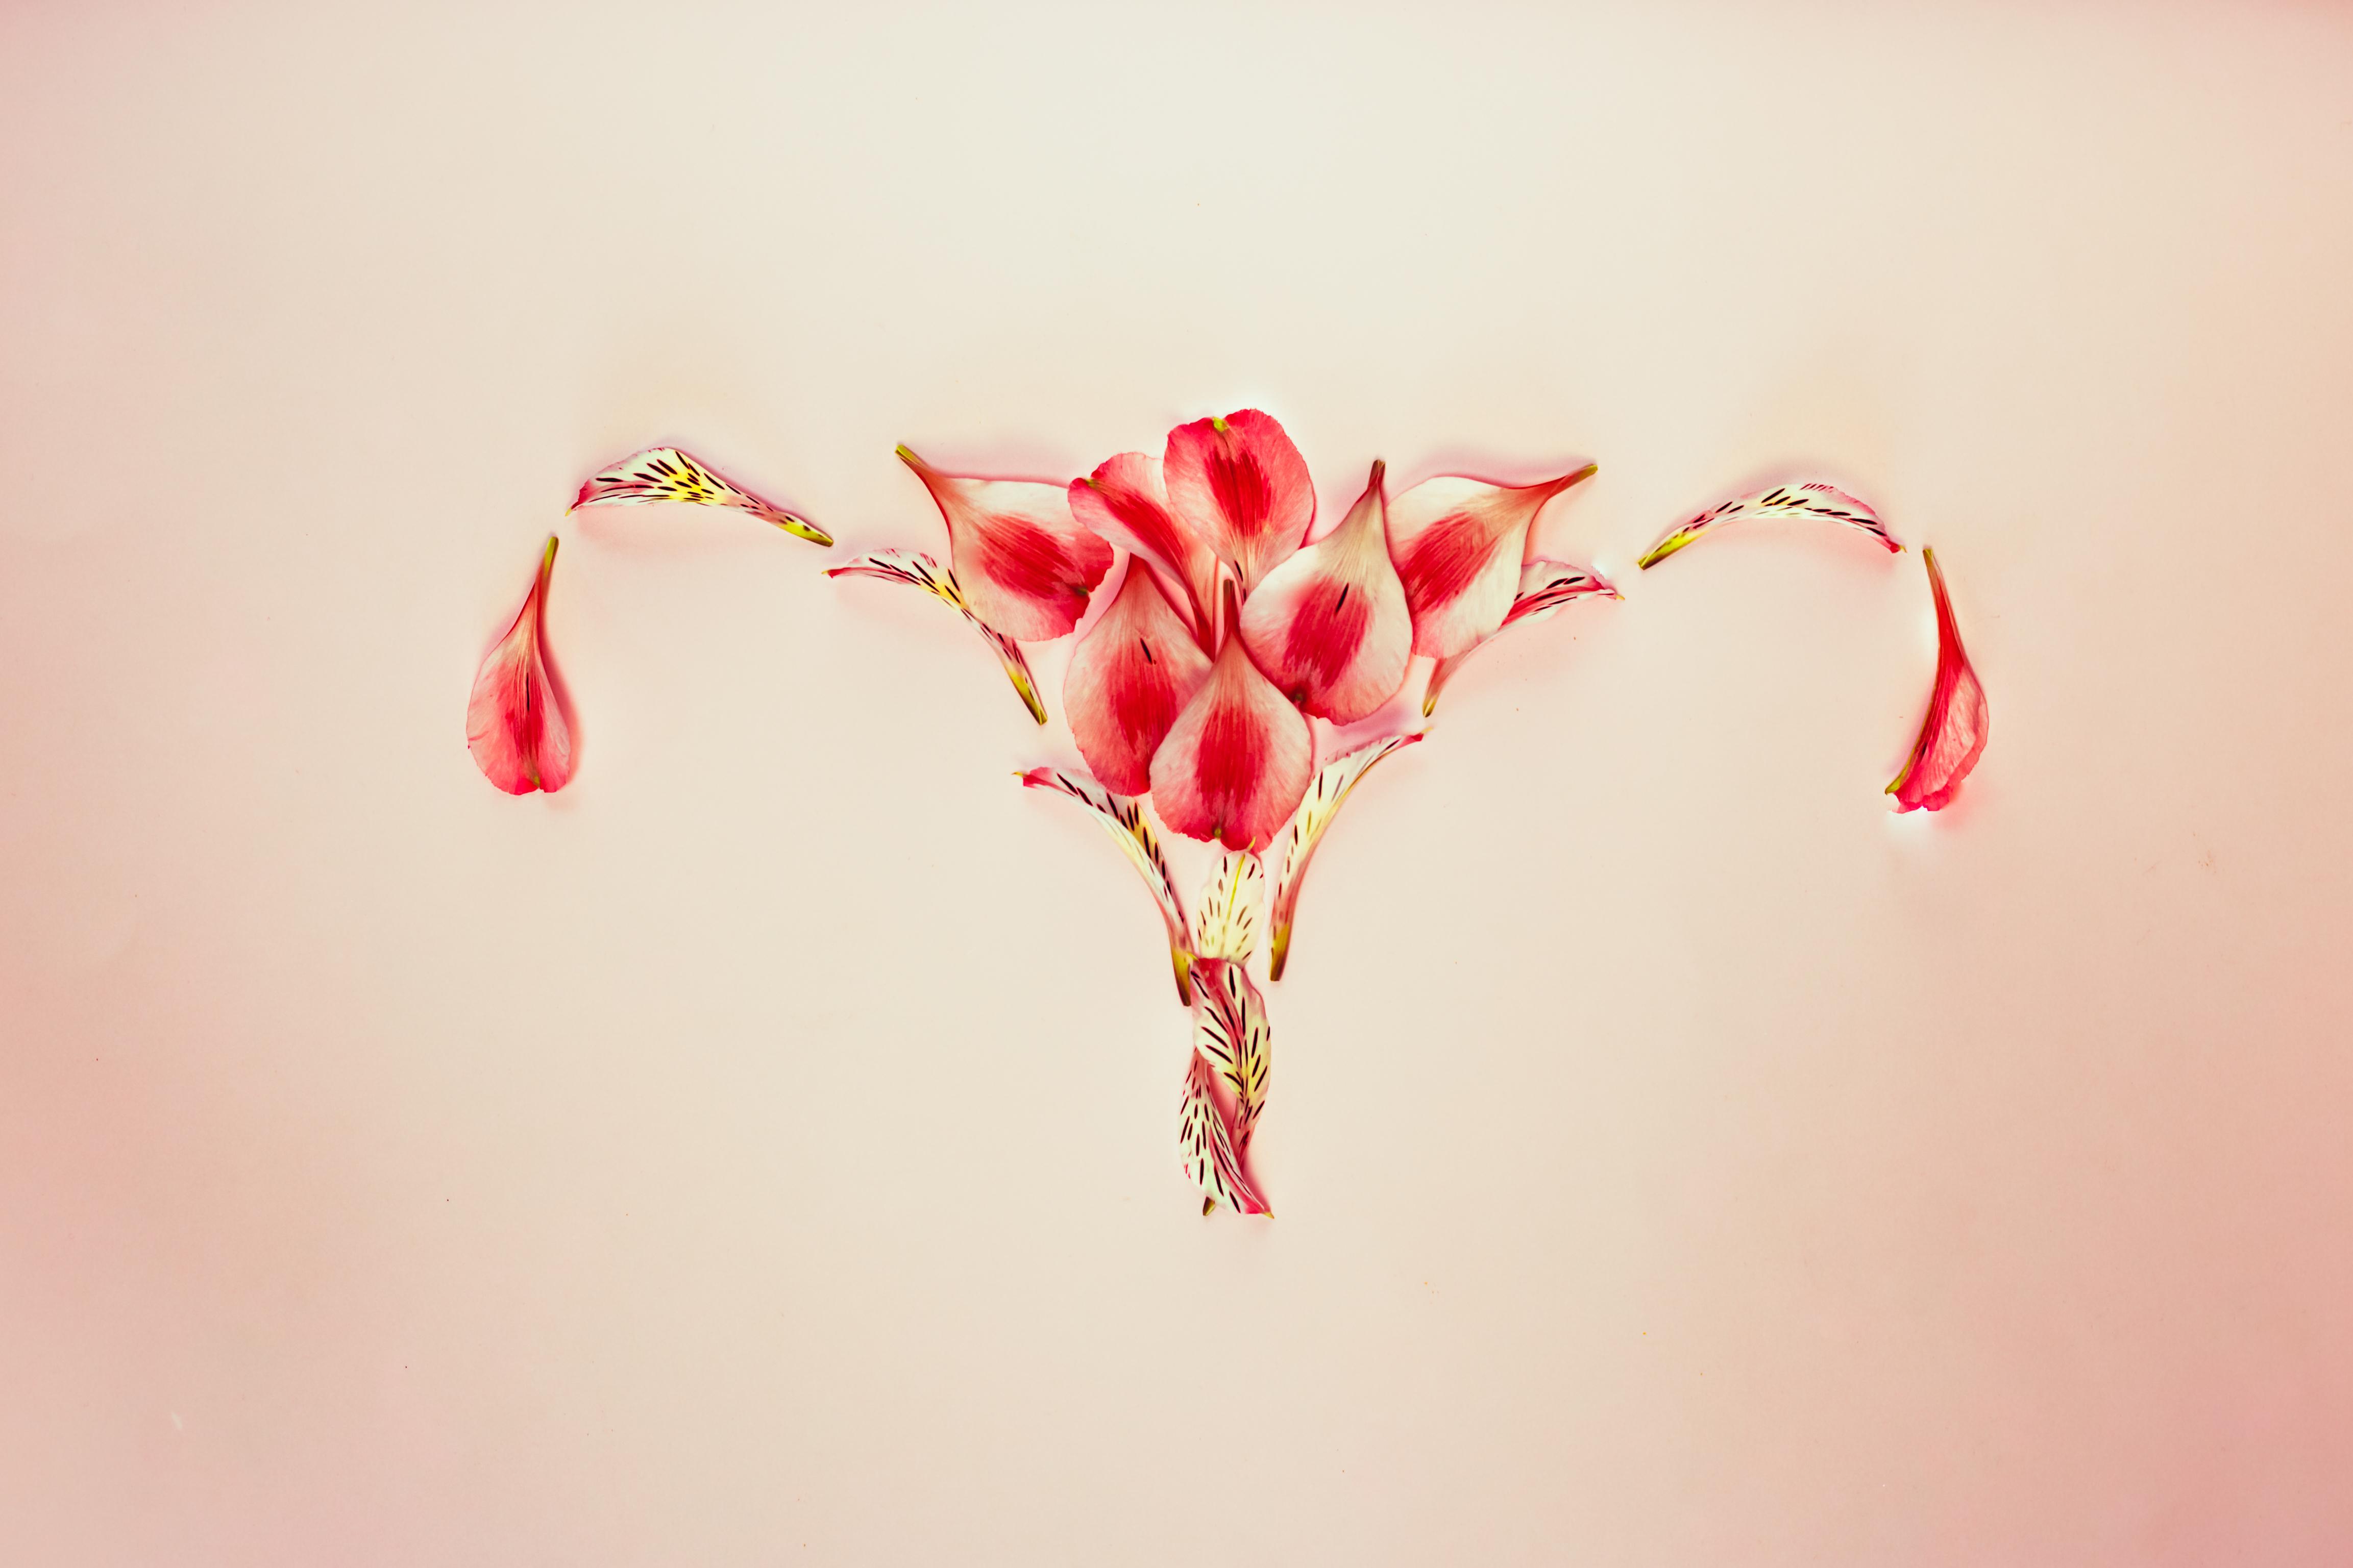 Conceito de útero de mulher com pétalas de flores